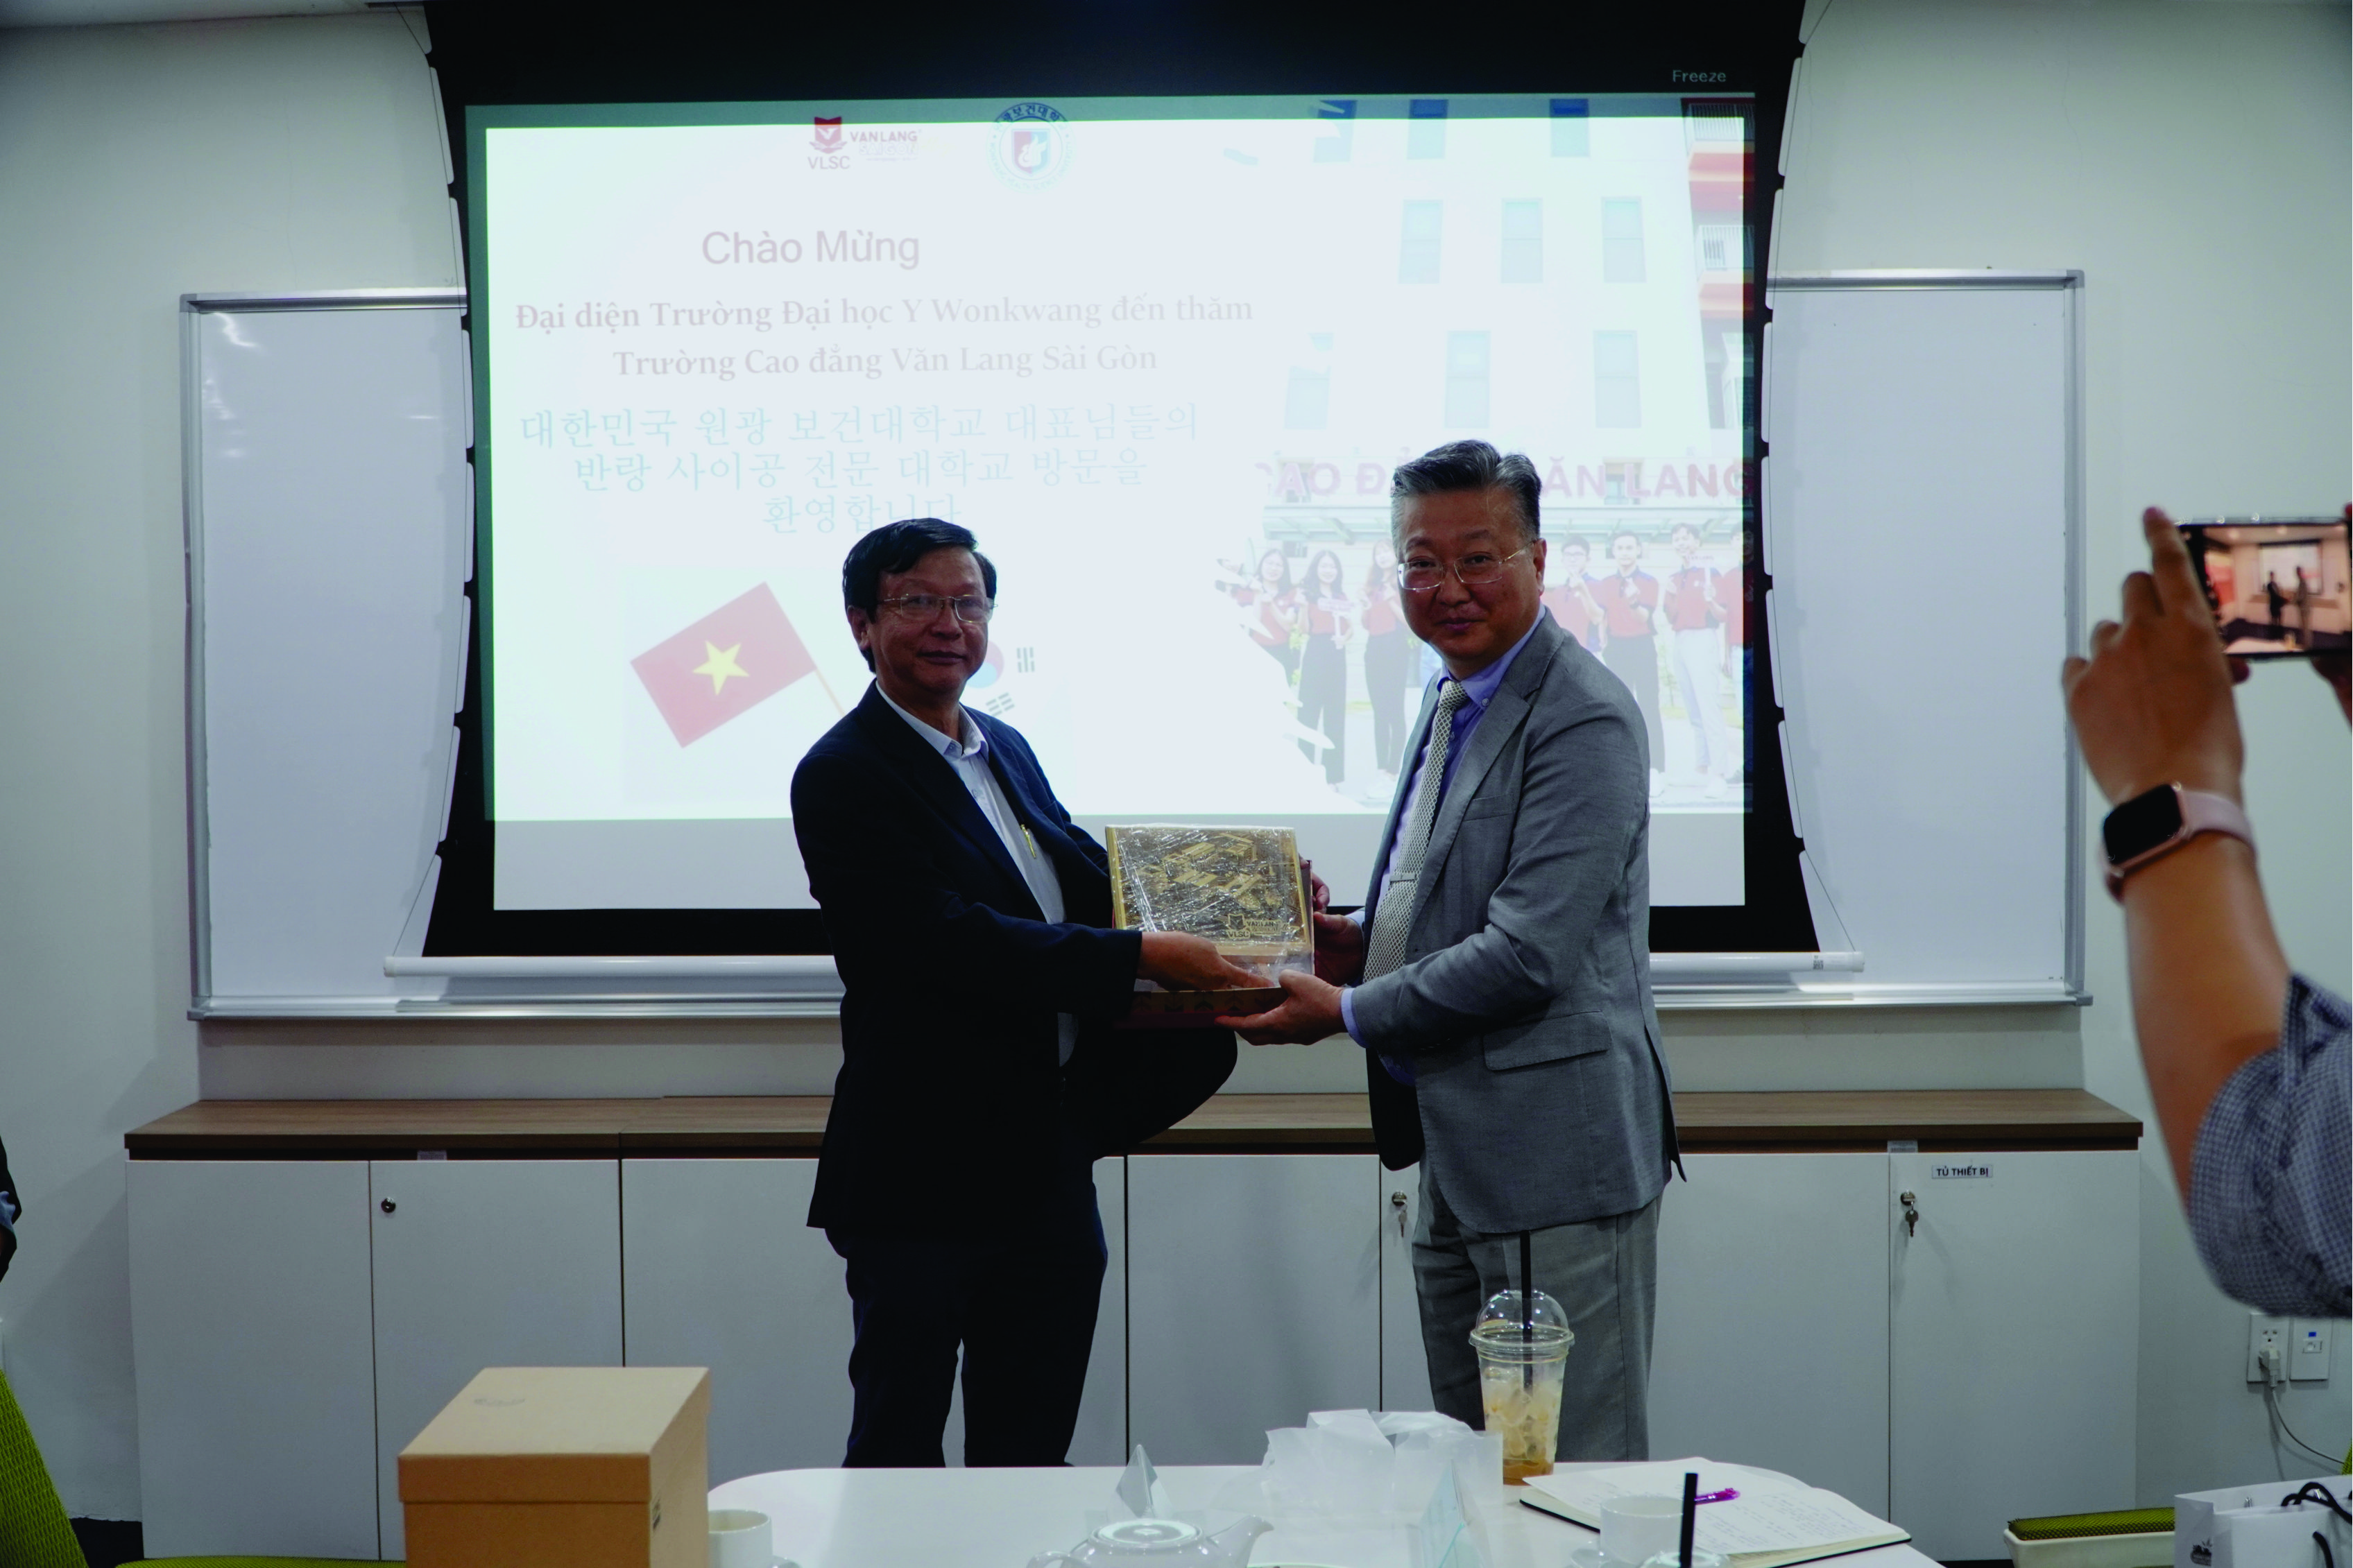 Đại diện trường Đại học Y Wonkwang (Hàn Quốc) đến thăm và trao đổi chương trình hợp tác với trường Cao đẳng Văn Lang Sài Gòn